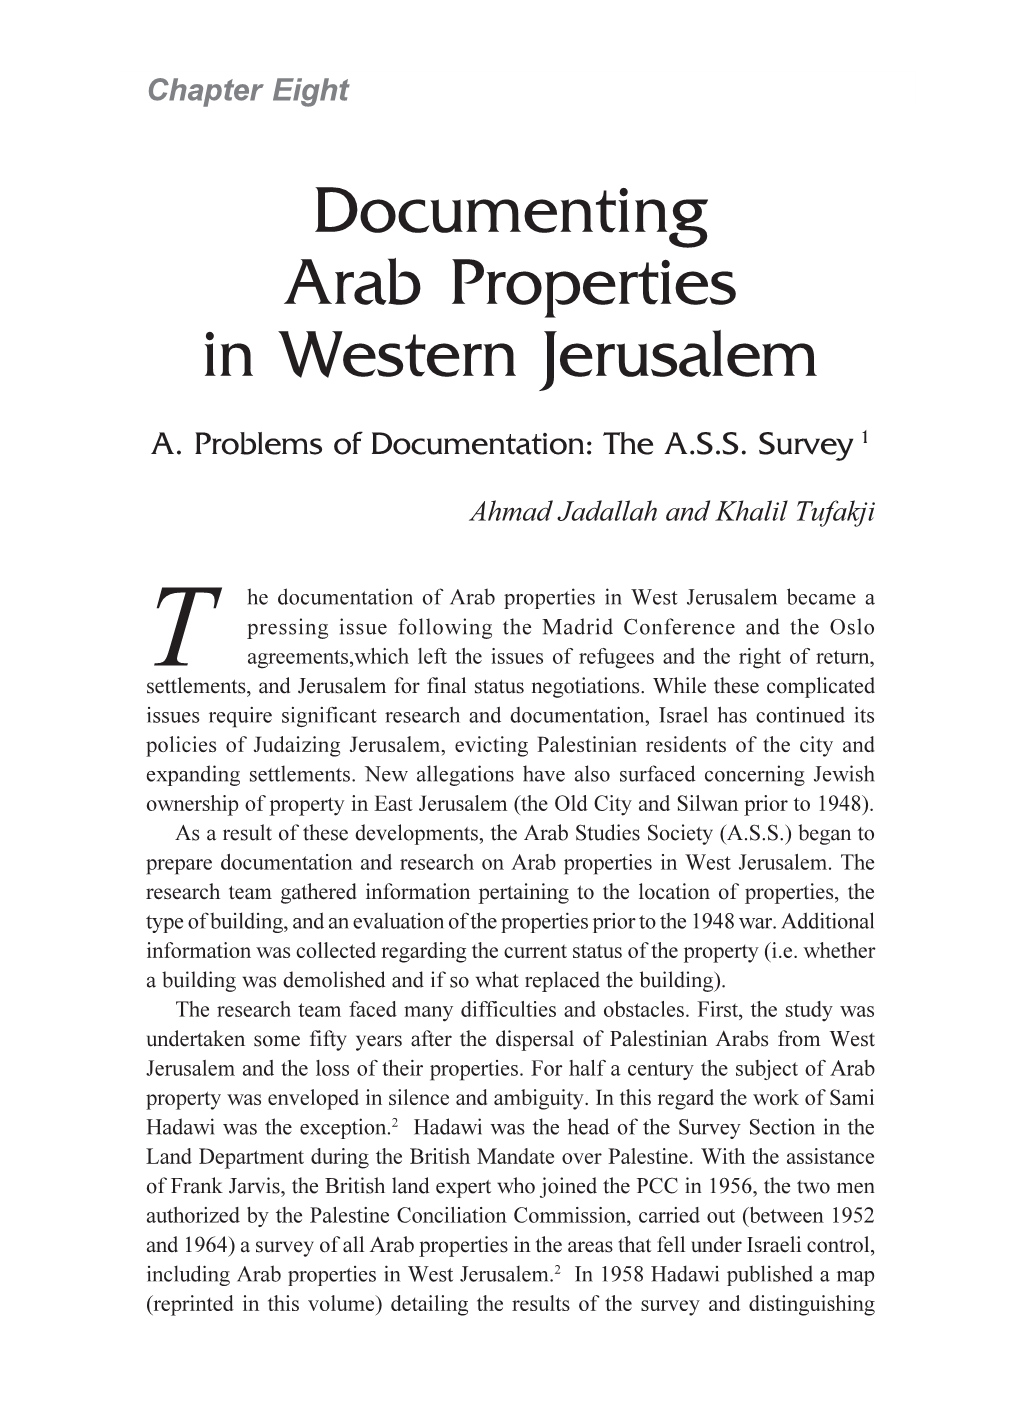 Documenting Arab Properties in Western Jerusalem